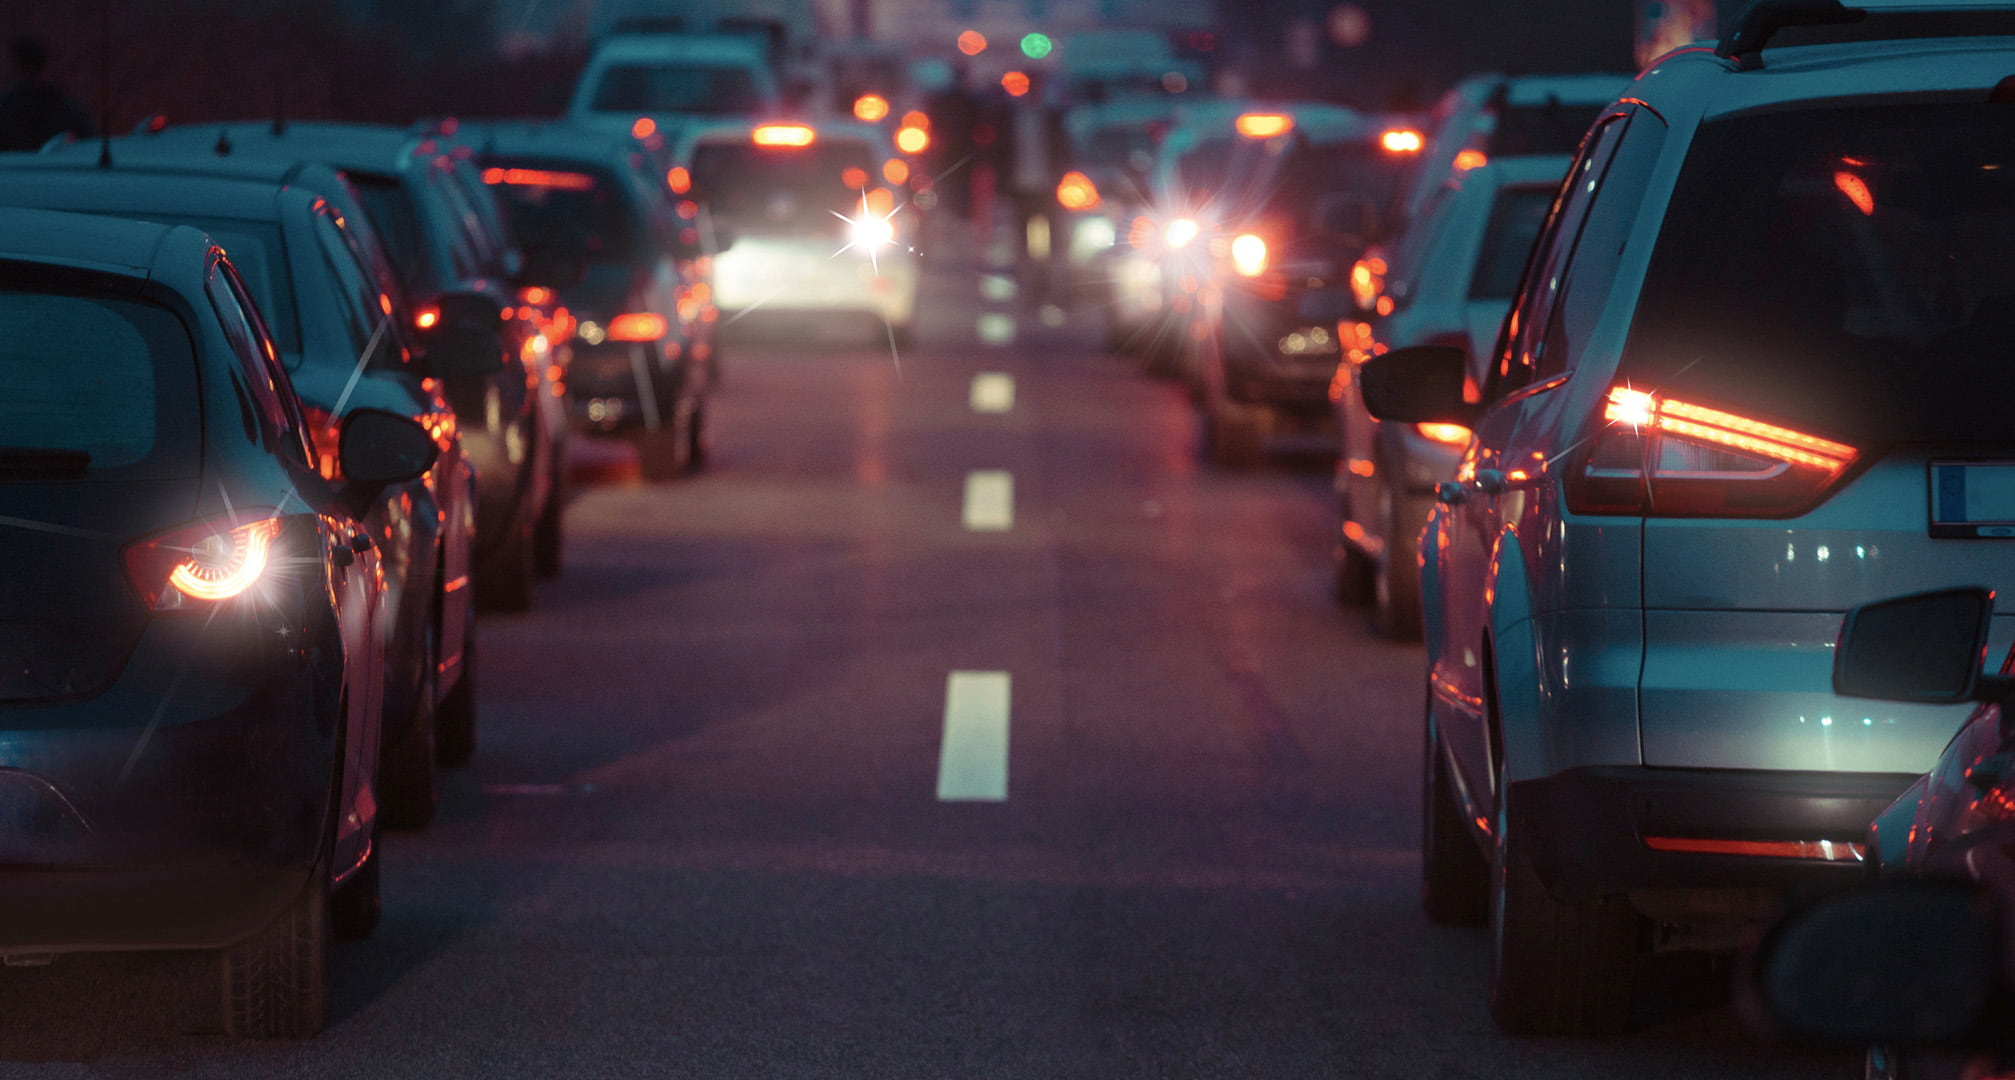 Sternförmiges Muster in der Mitte der Rücklichter eines Autos bei Nacht, verursacht durch Astigmatismus (links). Klare Auto-Rücklichter bei Nacht, gesehen von einem gesunden Auge (rechts)